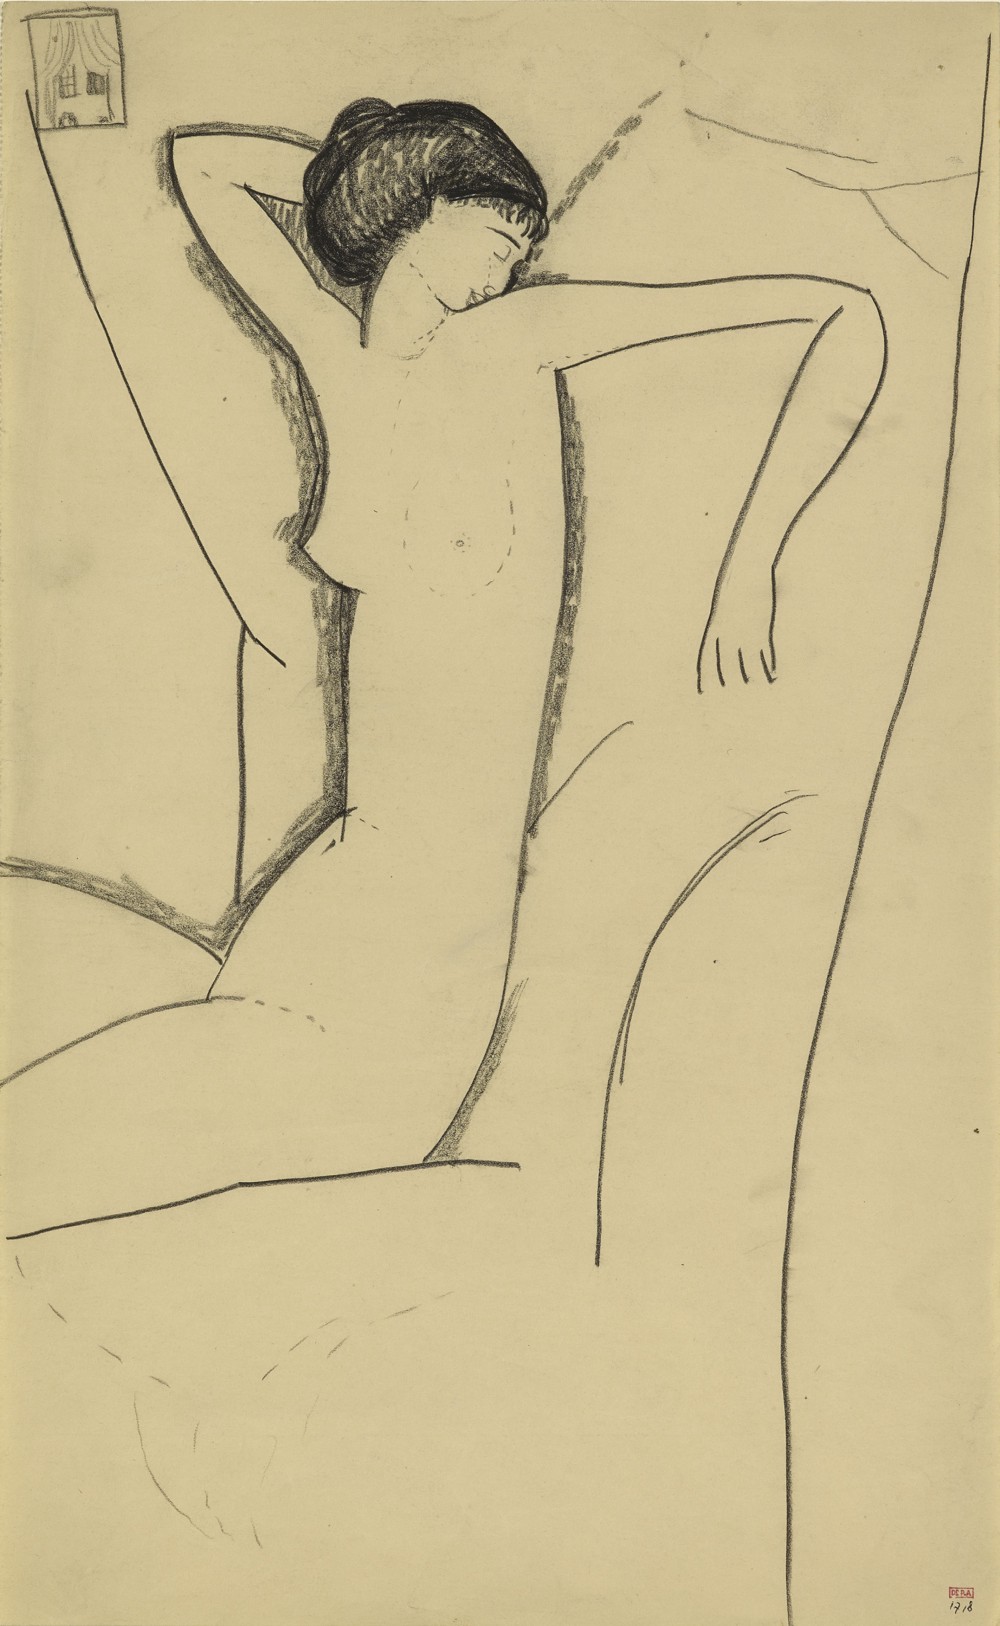 坐着的裸体女性 by 阿梅代奥 莫迪利亚尼 - c. 1911 - 40.6 x 25.4 cm 